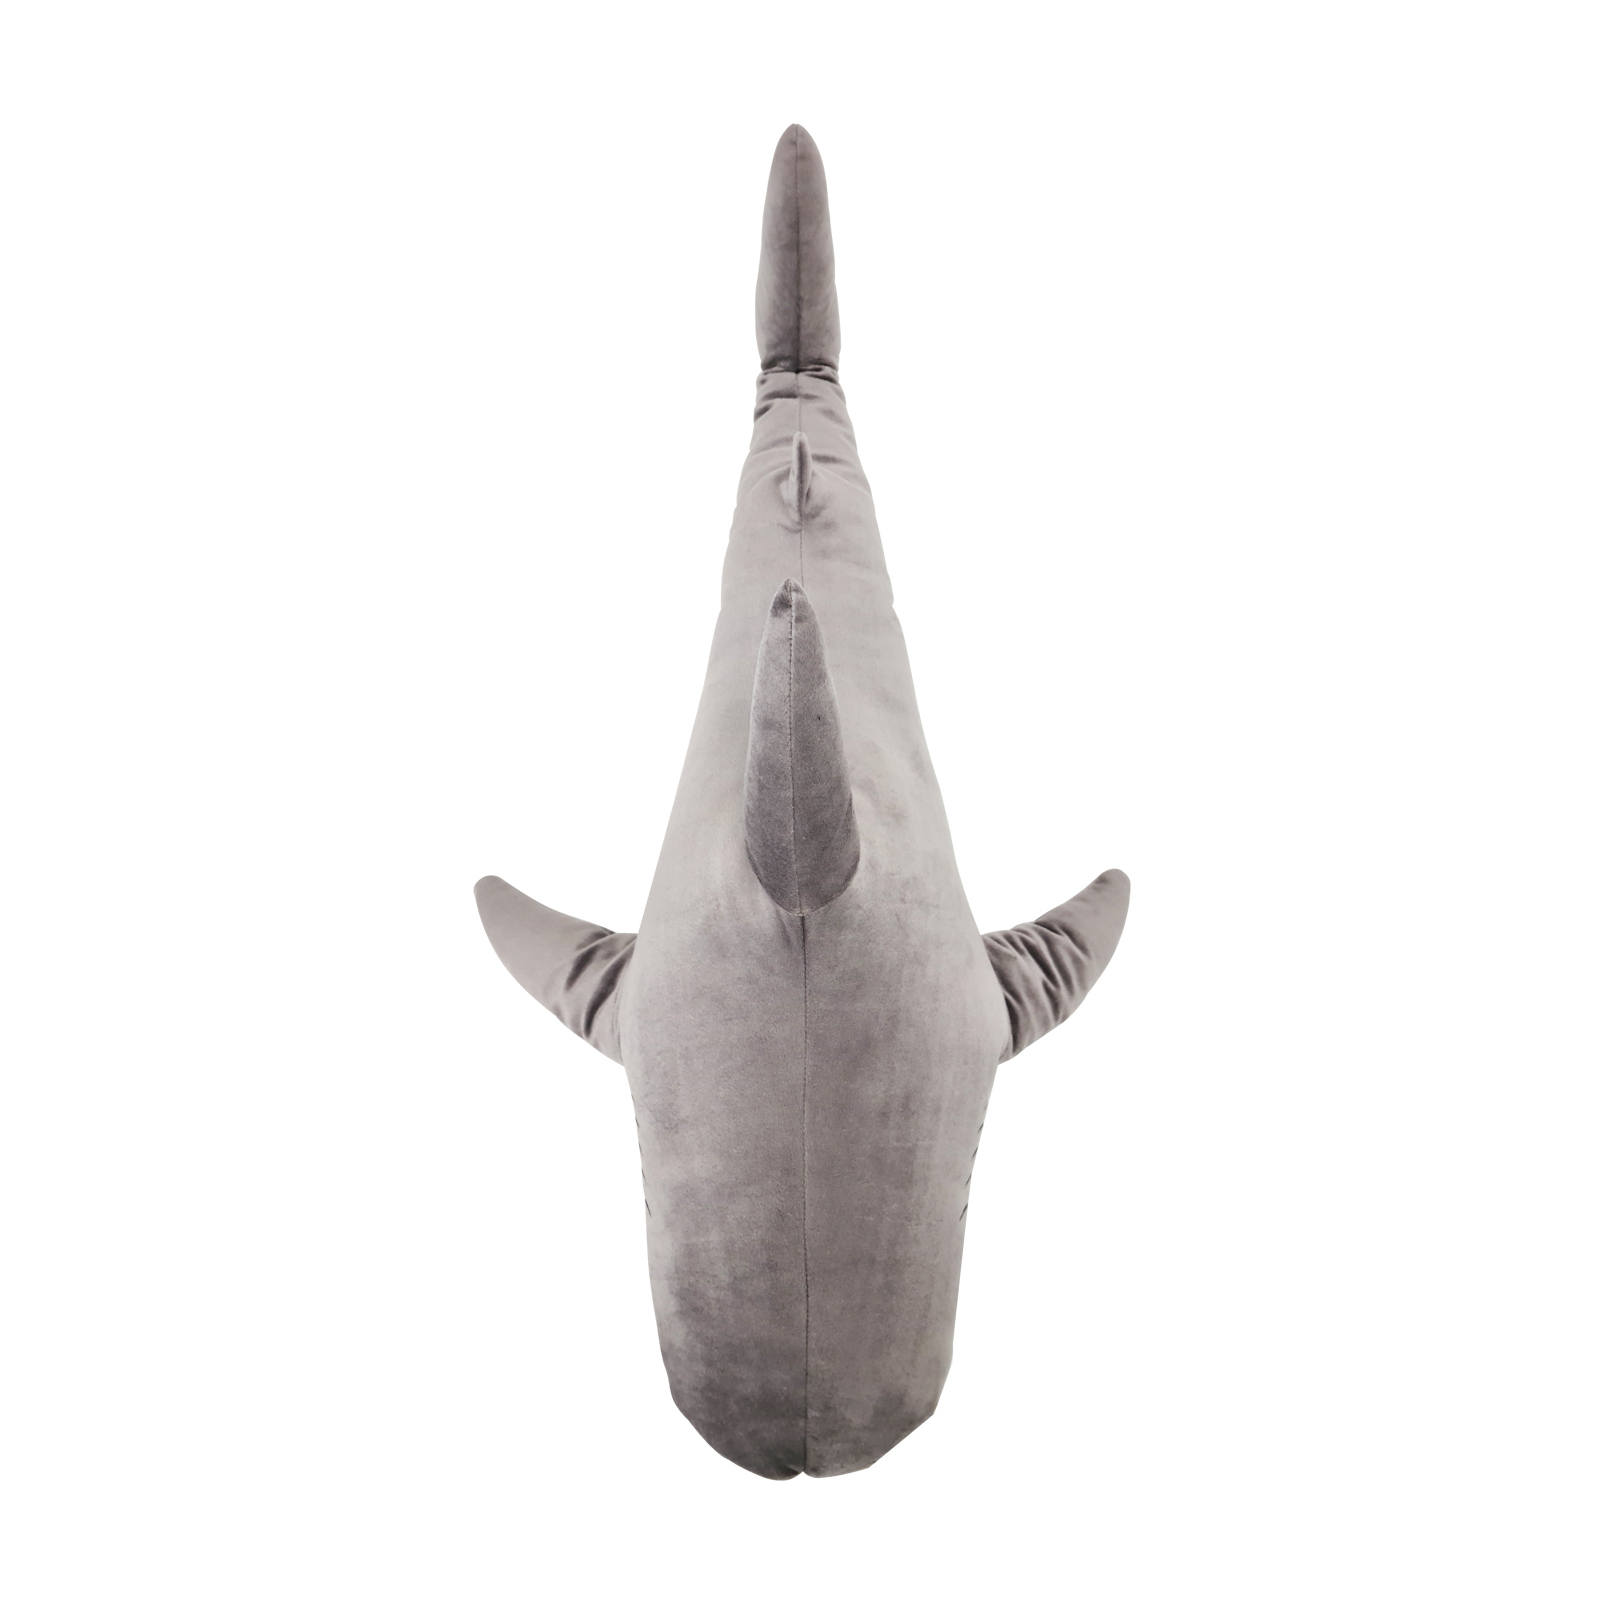 Мягкая игрушка WP Merchandise Акула серая, 100 см (FWPTSHARK22GR0100) изображение 3